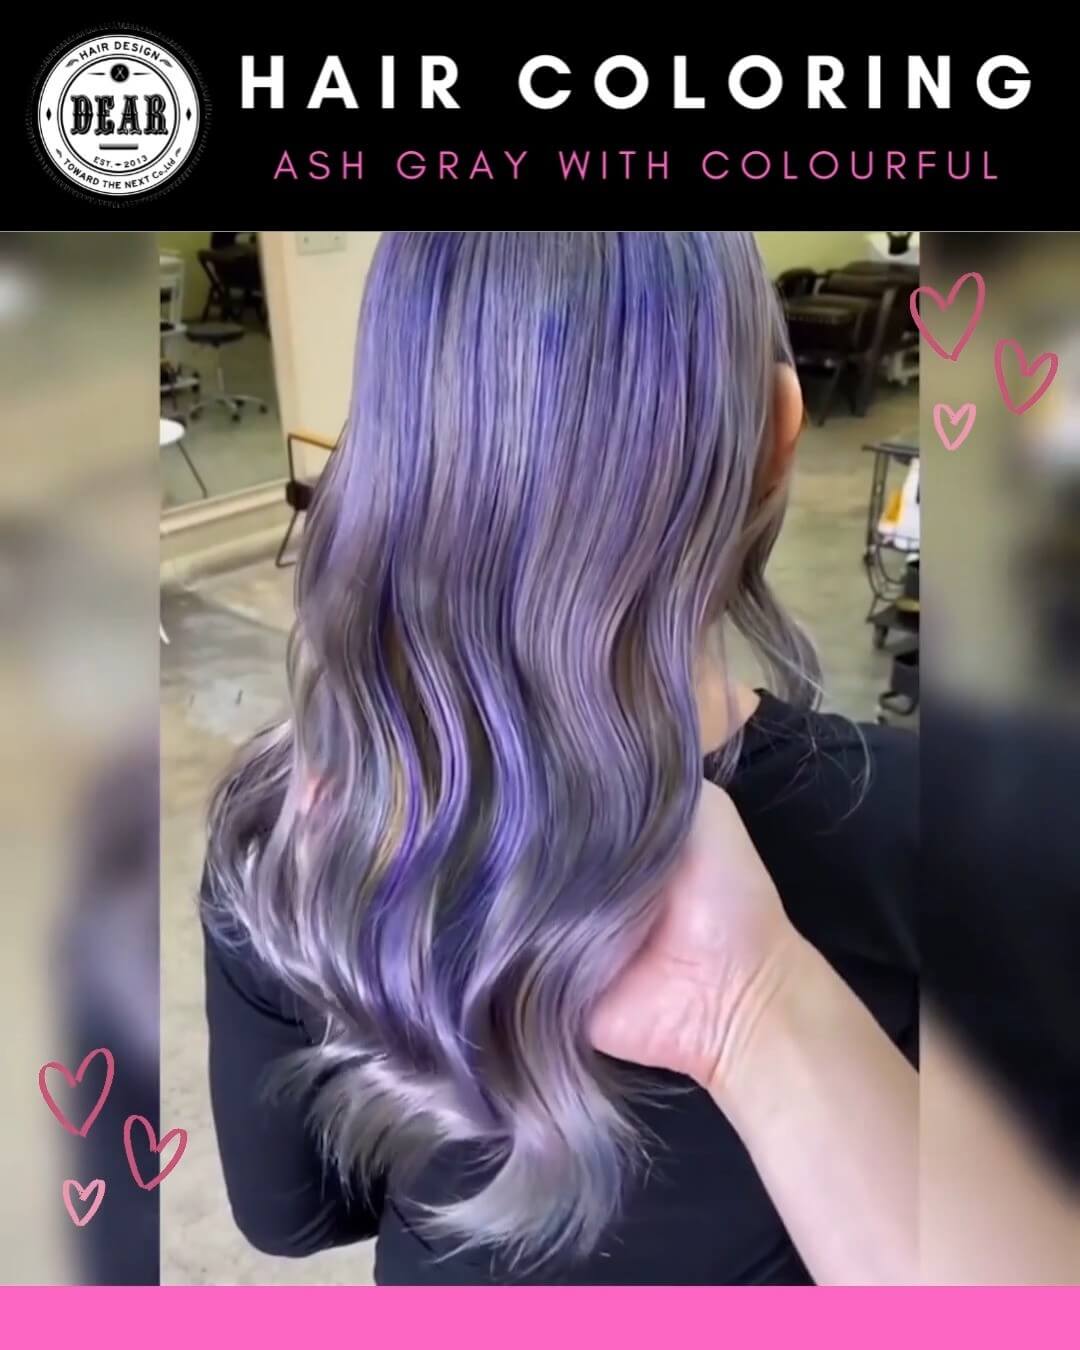 เปลี่ยนสีผมให้สวยสดใส Ash Gray with Colourful ️ เนรมิตรผมสวยให้คุณรู้สึกมั่นใจในวันพิเศษที่ DEAR Hair Design  สีผมแบบ Ash Gray with Colourful ด้วยการเล่นมากมาย ครั้งนี้ได้หยิบสีเหลืองแดง️น้ำเงินม่วงส้ม🧡 มาลงบนเส้นผม ทำให้สีผมสวยสดใสและดูน่าค้นหา! รับรองว่าสีผมสวยปังไม่ซ้ำใครแน่นอนค่า  ทุกขั้นตอนดูแลโดยสไตลิสต์มากฝีมือ คุณลูกค้าจะได้สีผมที่คุณต้องการได้อย่างแน่นอนค่ะ  ลูกค้าสามารถจองคิวผ่านทางไลน์ ทางโทรศัพท์ หรือผ่านเว็บไซต์ได้เลยนะคะ  ️ 022586780
️ Line@(ภาษาไทย)：https://lin